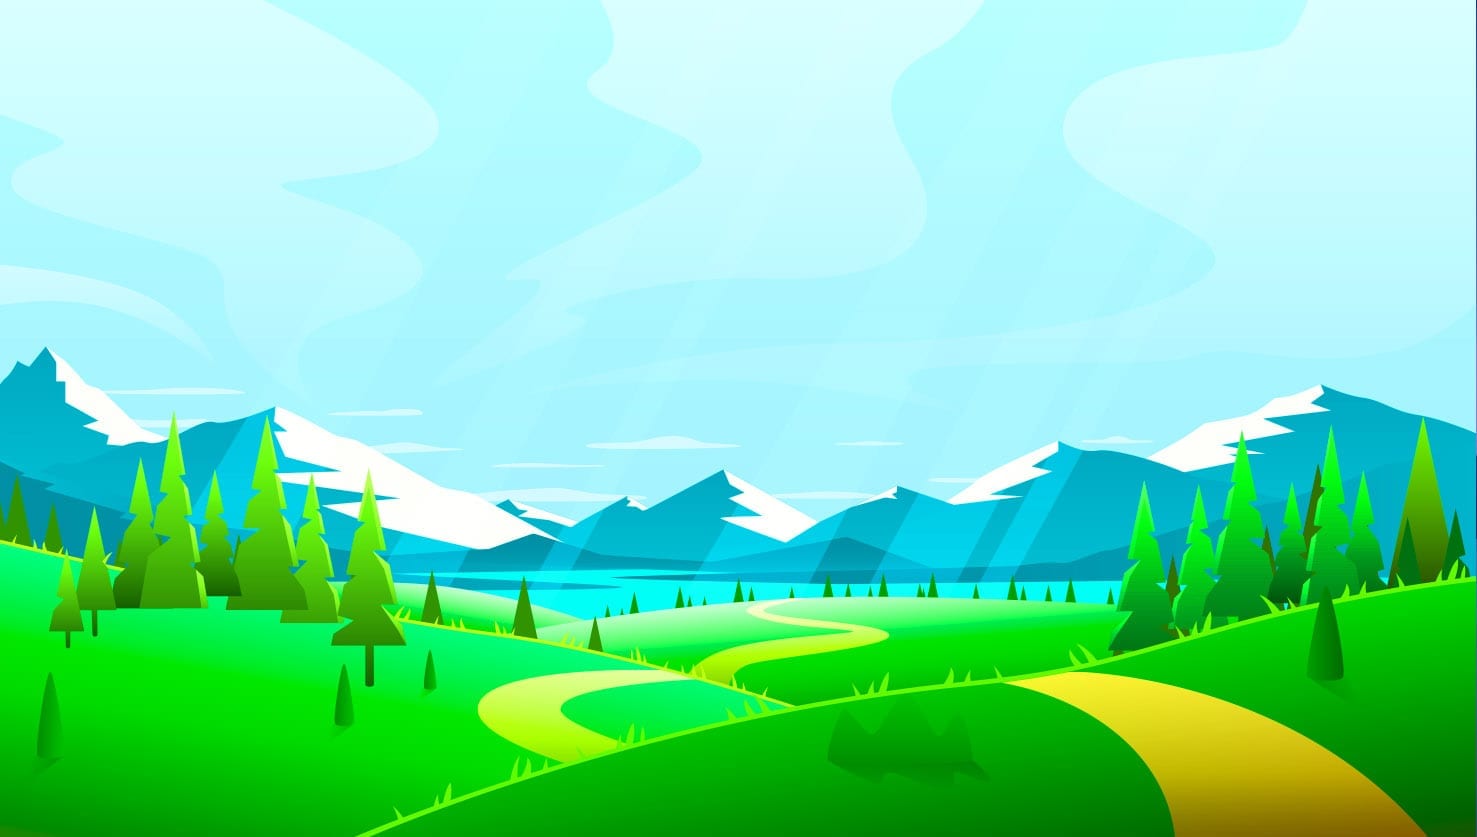 Puron graafinen maisemakuva, jossa auringon säteet valaisevat kaunista kumpuilevaa maisemaa. Takana vuorijono ja kirkasvetinen järvi